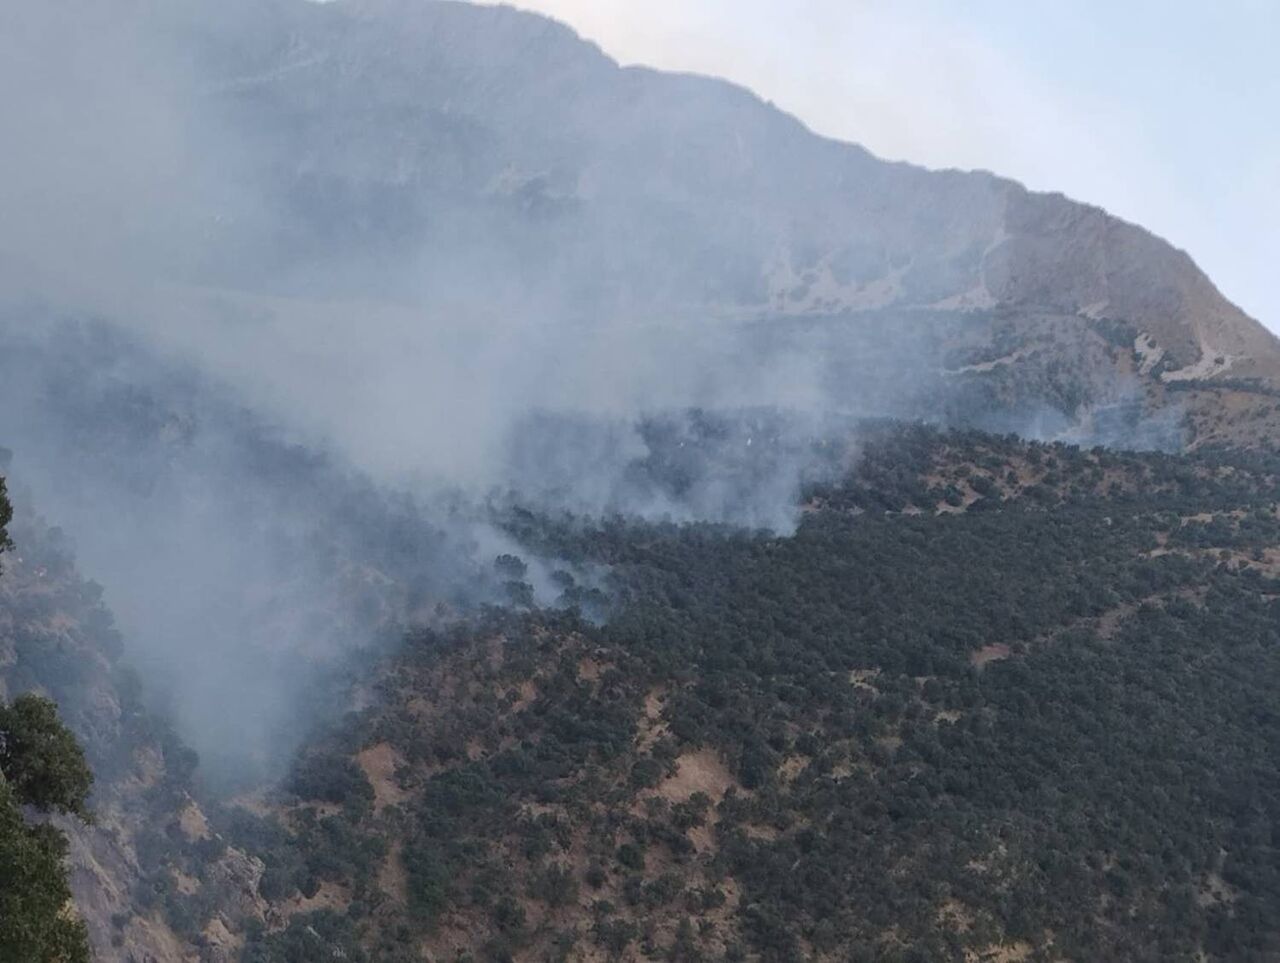  ۴۵هکتار از مراتع دالاهو در آتش سوخت